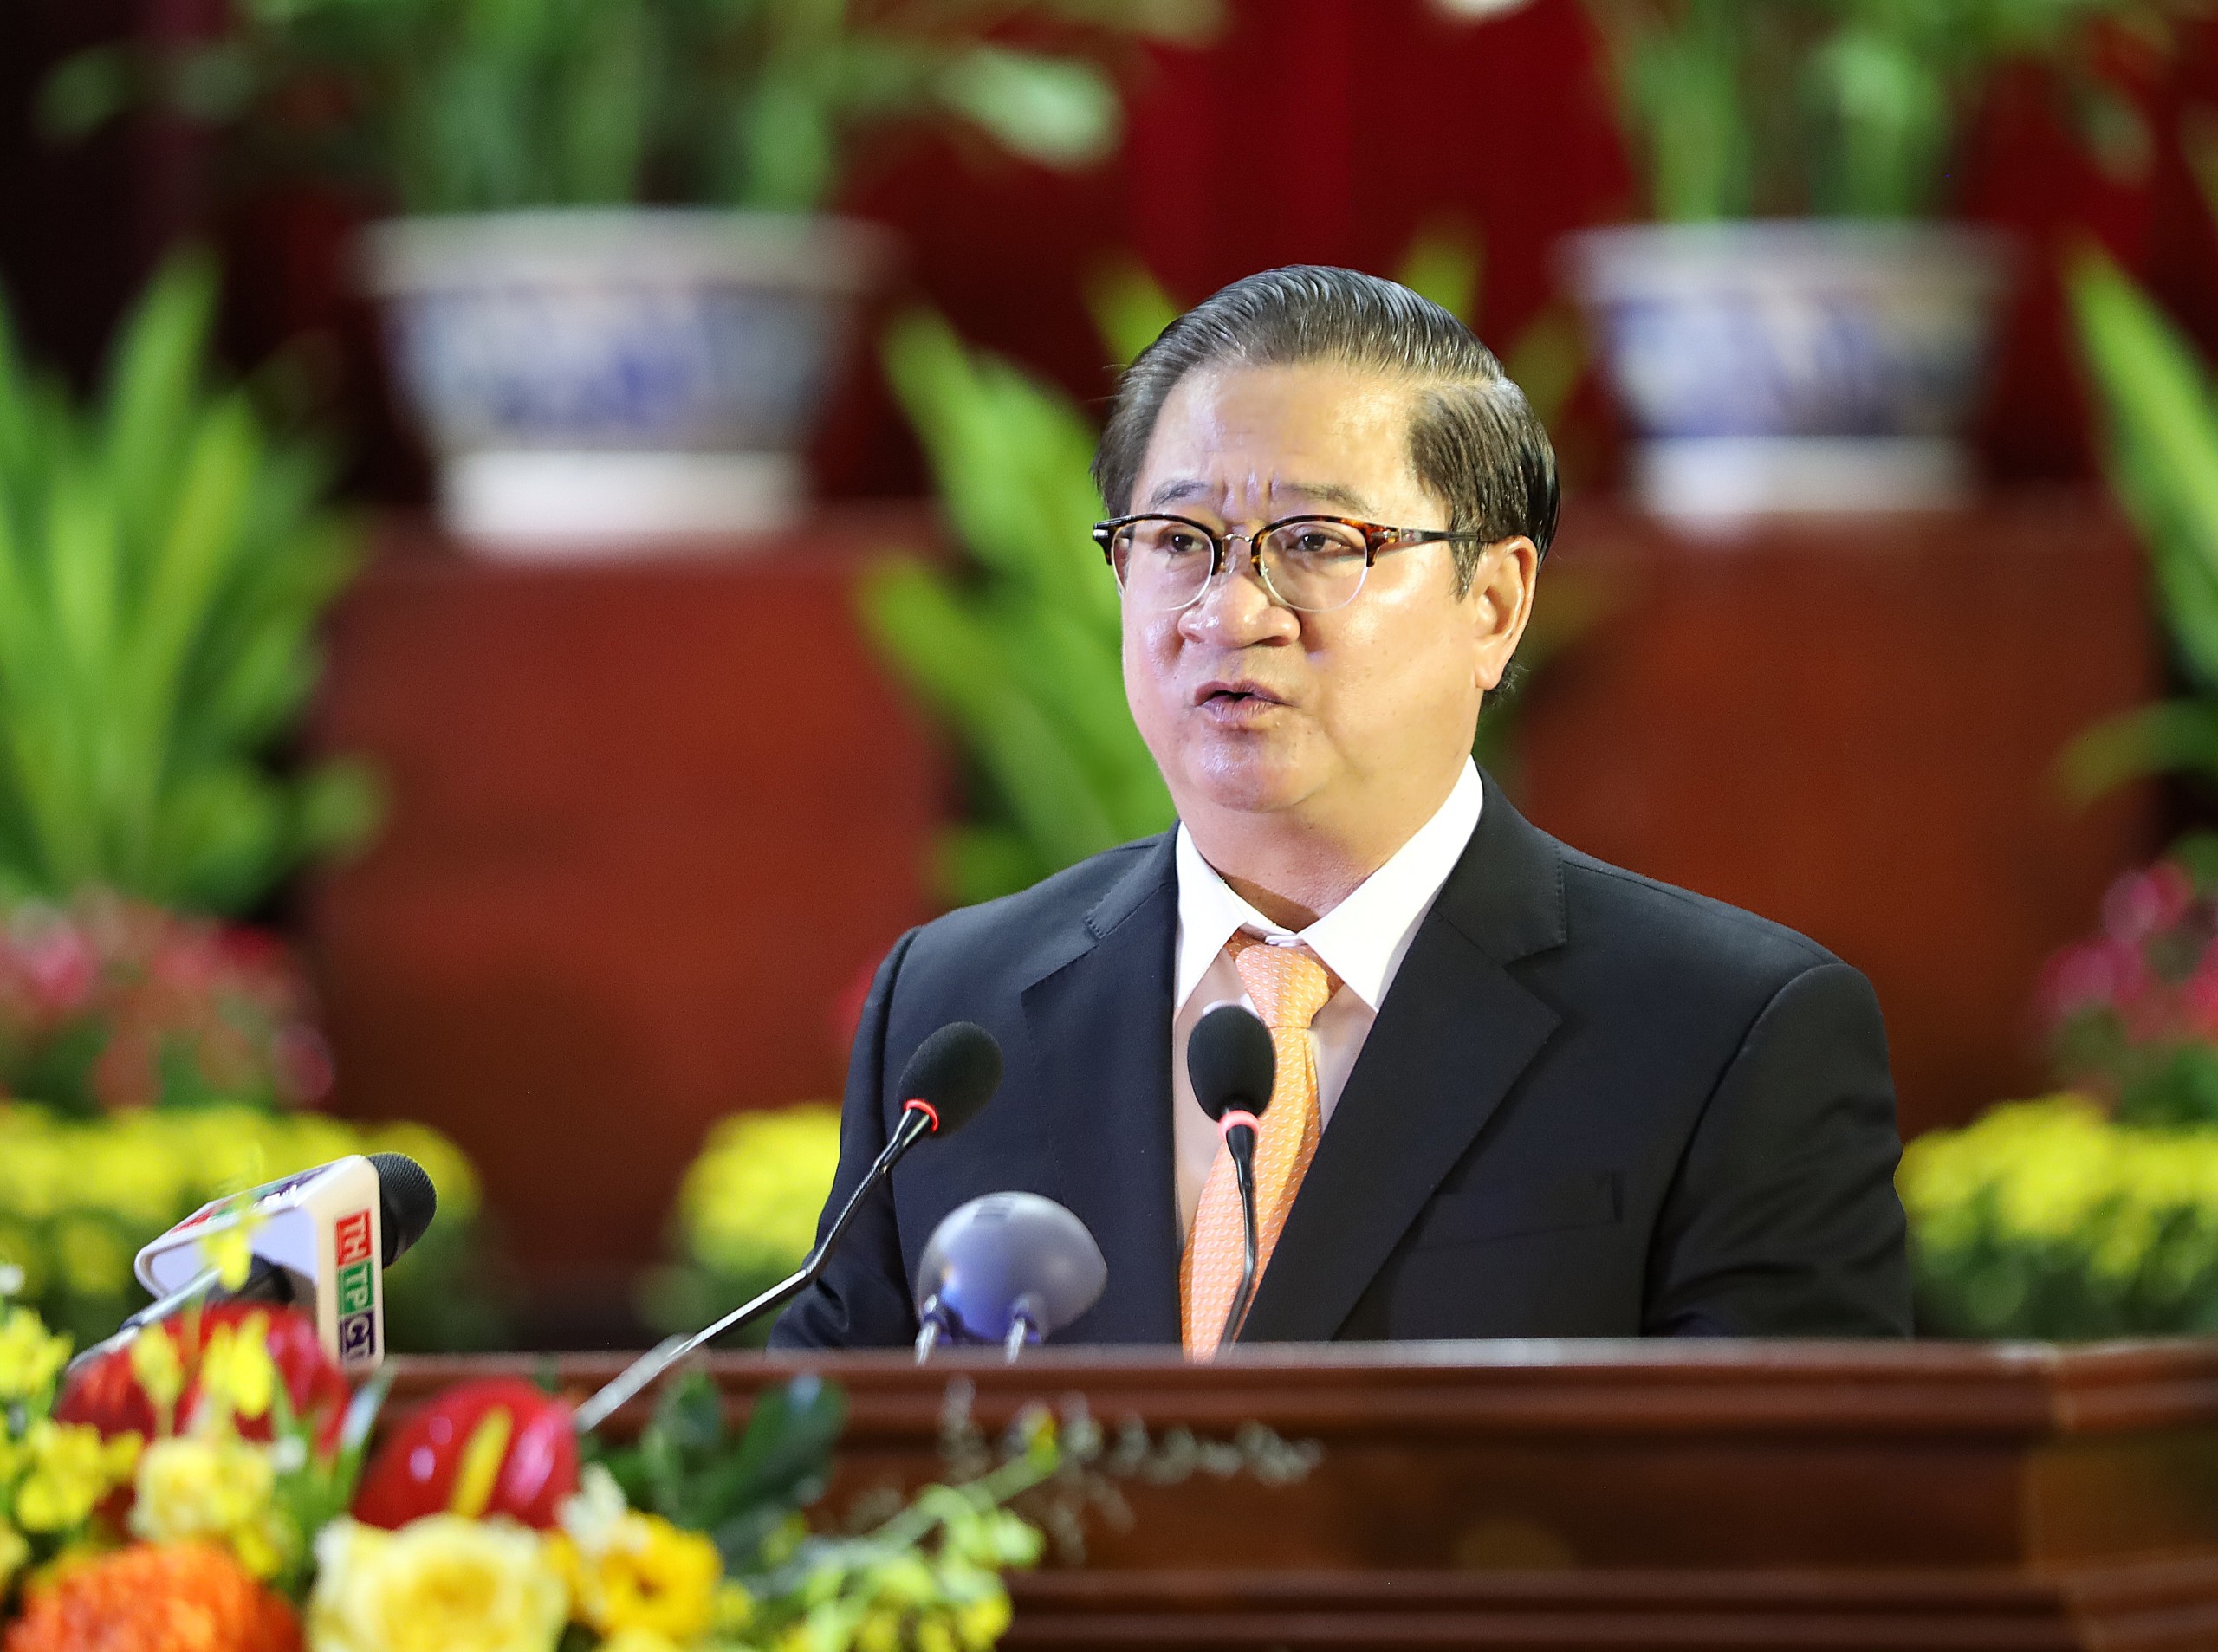 Ông Trần Việt Trường – Phó Bí thư Thành ủy, Chủ tịch Ủy ban nhân dân TP. Cần Thơ phát biểu ôn lại truyền thống tại buổi họp mặt.